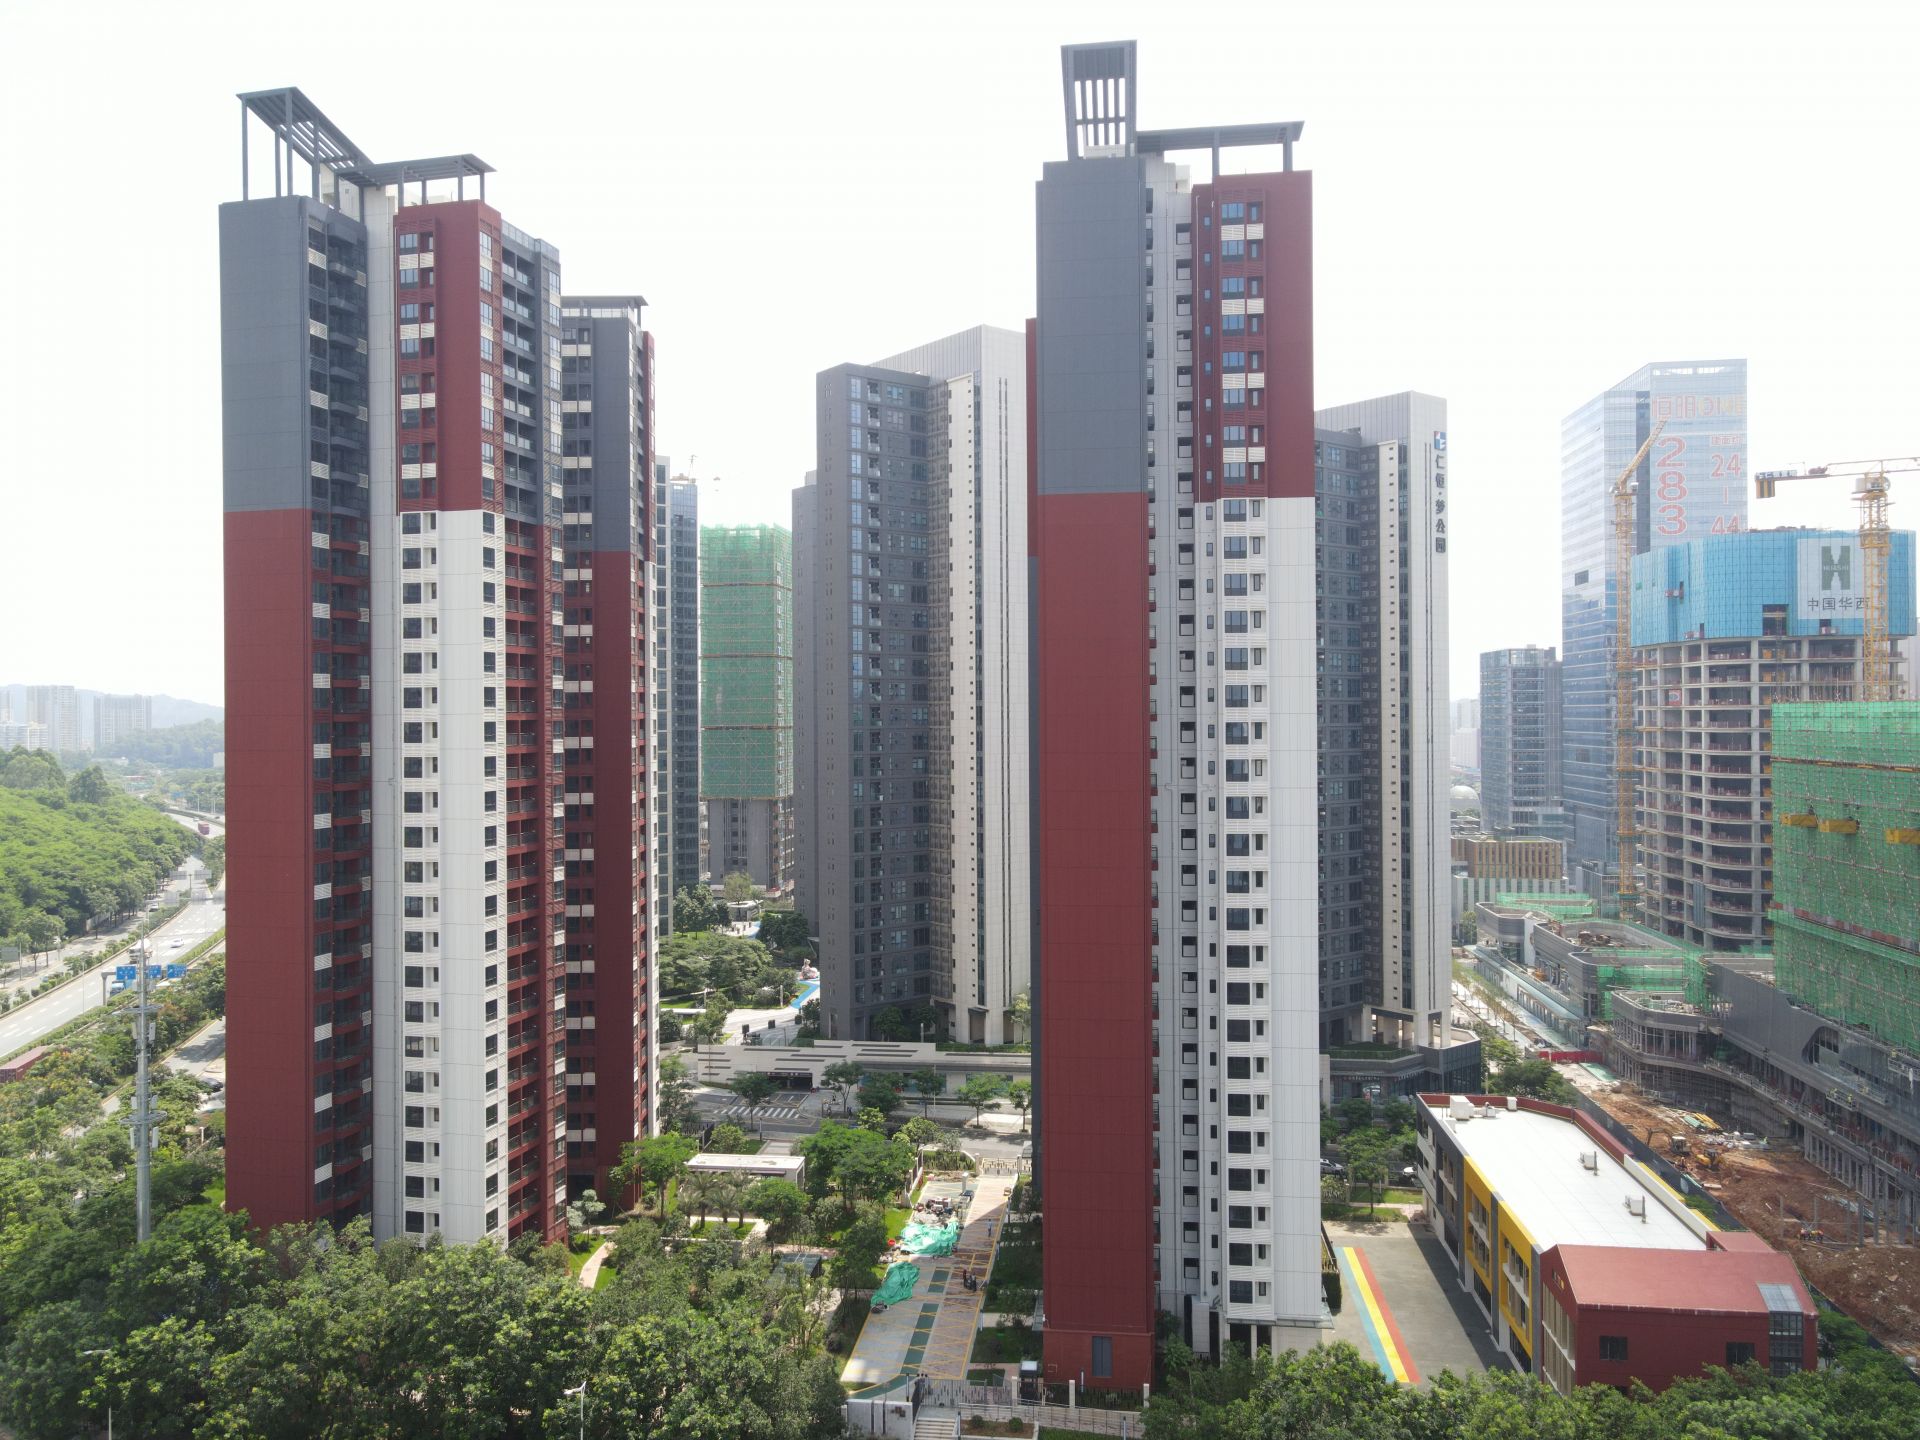 为接下来继续探索可复制,可推广的公共住房,开创人才安居深圳模式